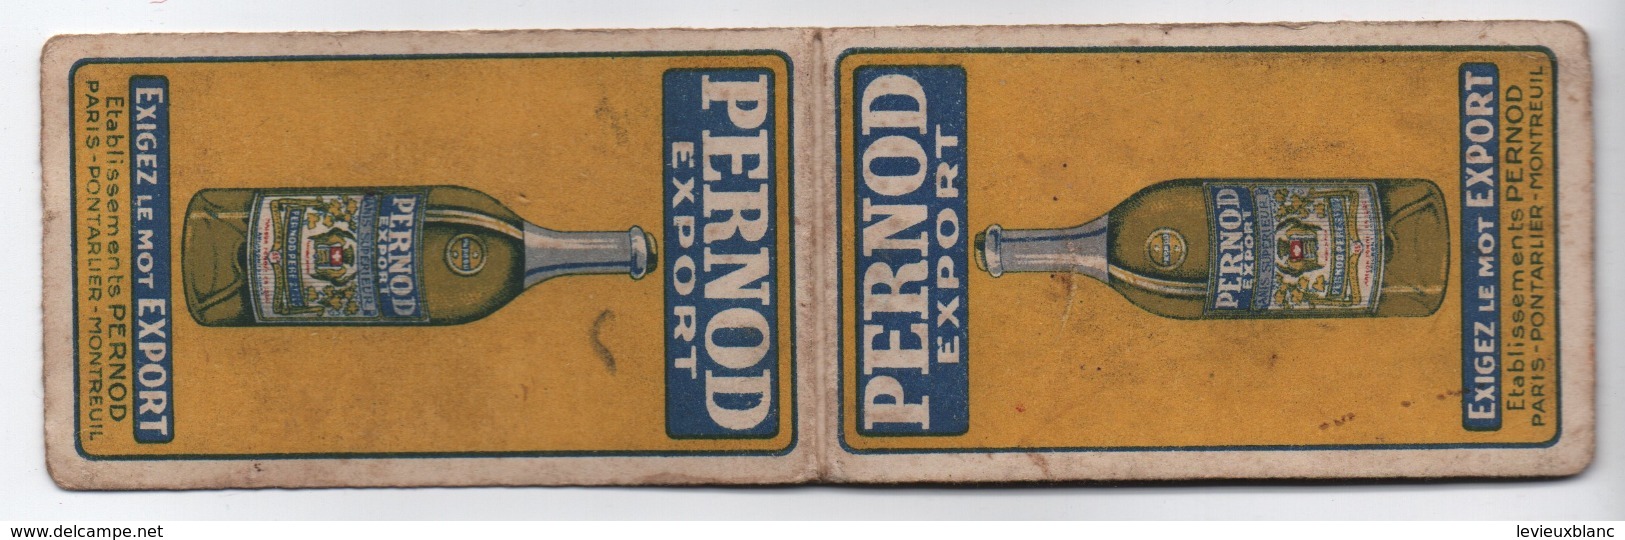 Petit Carnet Publicitaire/ Pernod Export/Exigez Le Mot Export/Paris - Pontarlier -Montreuil / Vers 1930        VPN241 - Autres & Non Classés